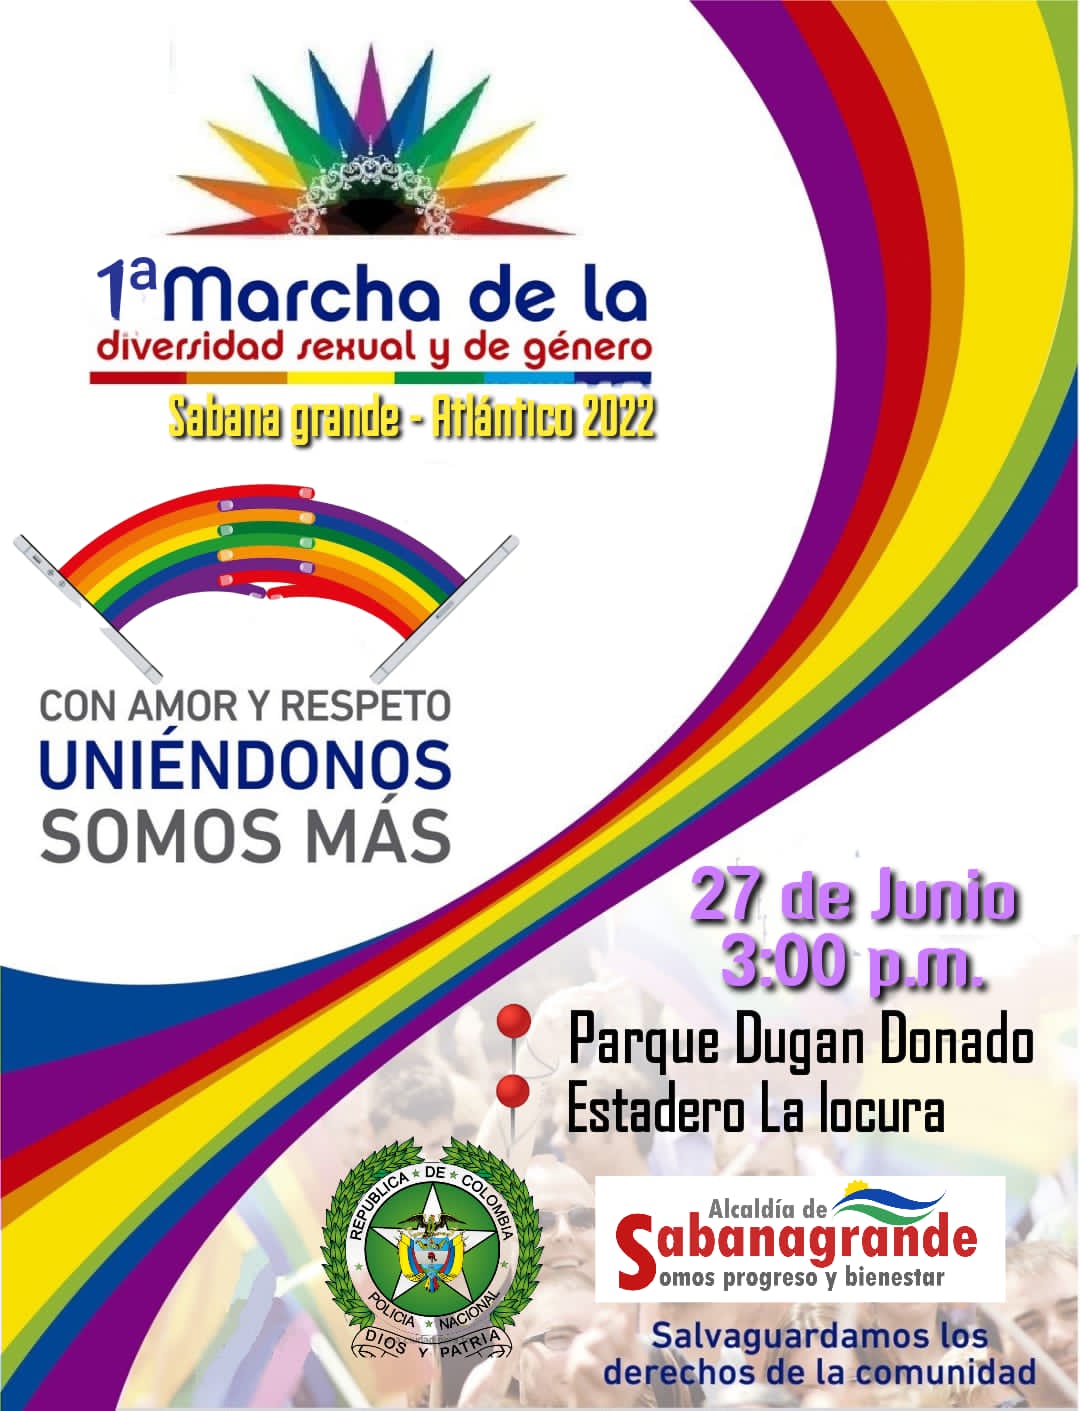  1ª Marcha De La Diversidad Sexual Y De Género Sabana Grande 2022 [SABANA GRANDE] 